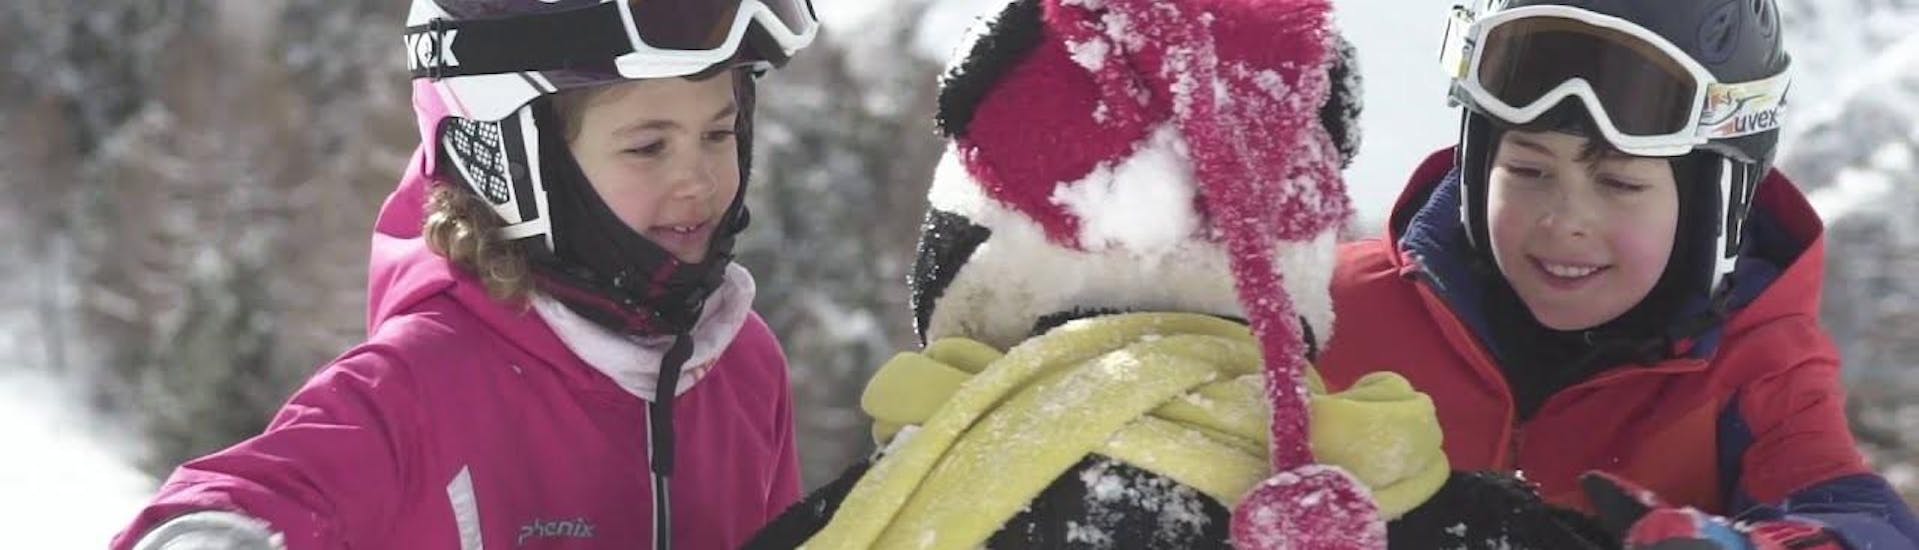 Zwei Kinder umarmen das Maskottchen Bobi nach einem erfolgreichen Kinder-Skikurs mit der Skischule Grächen.